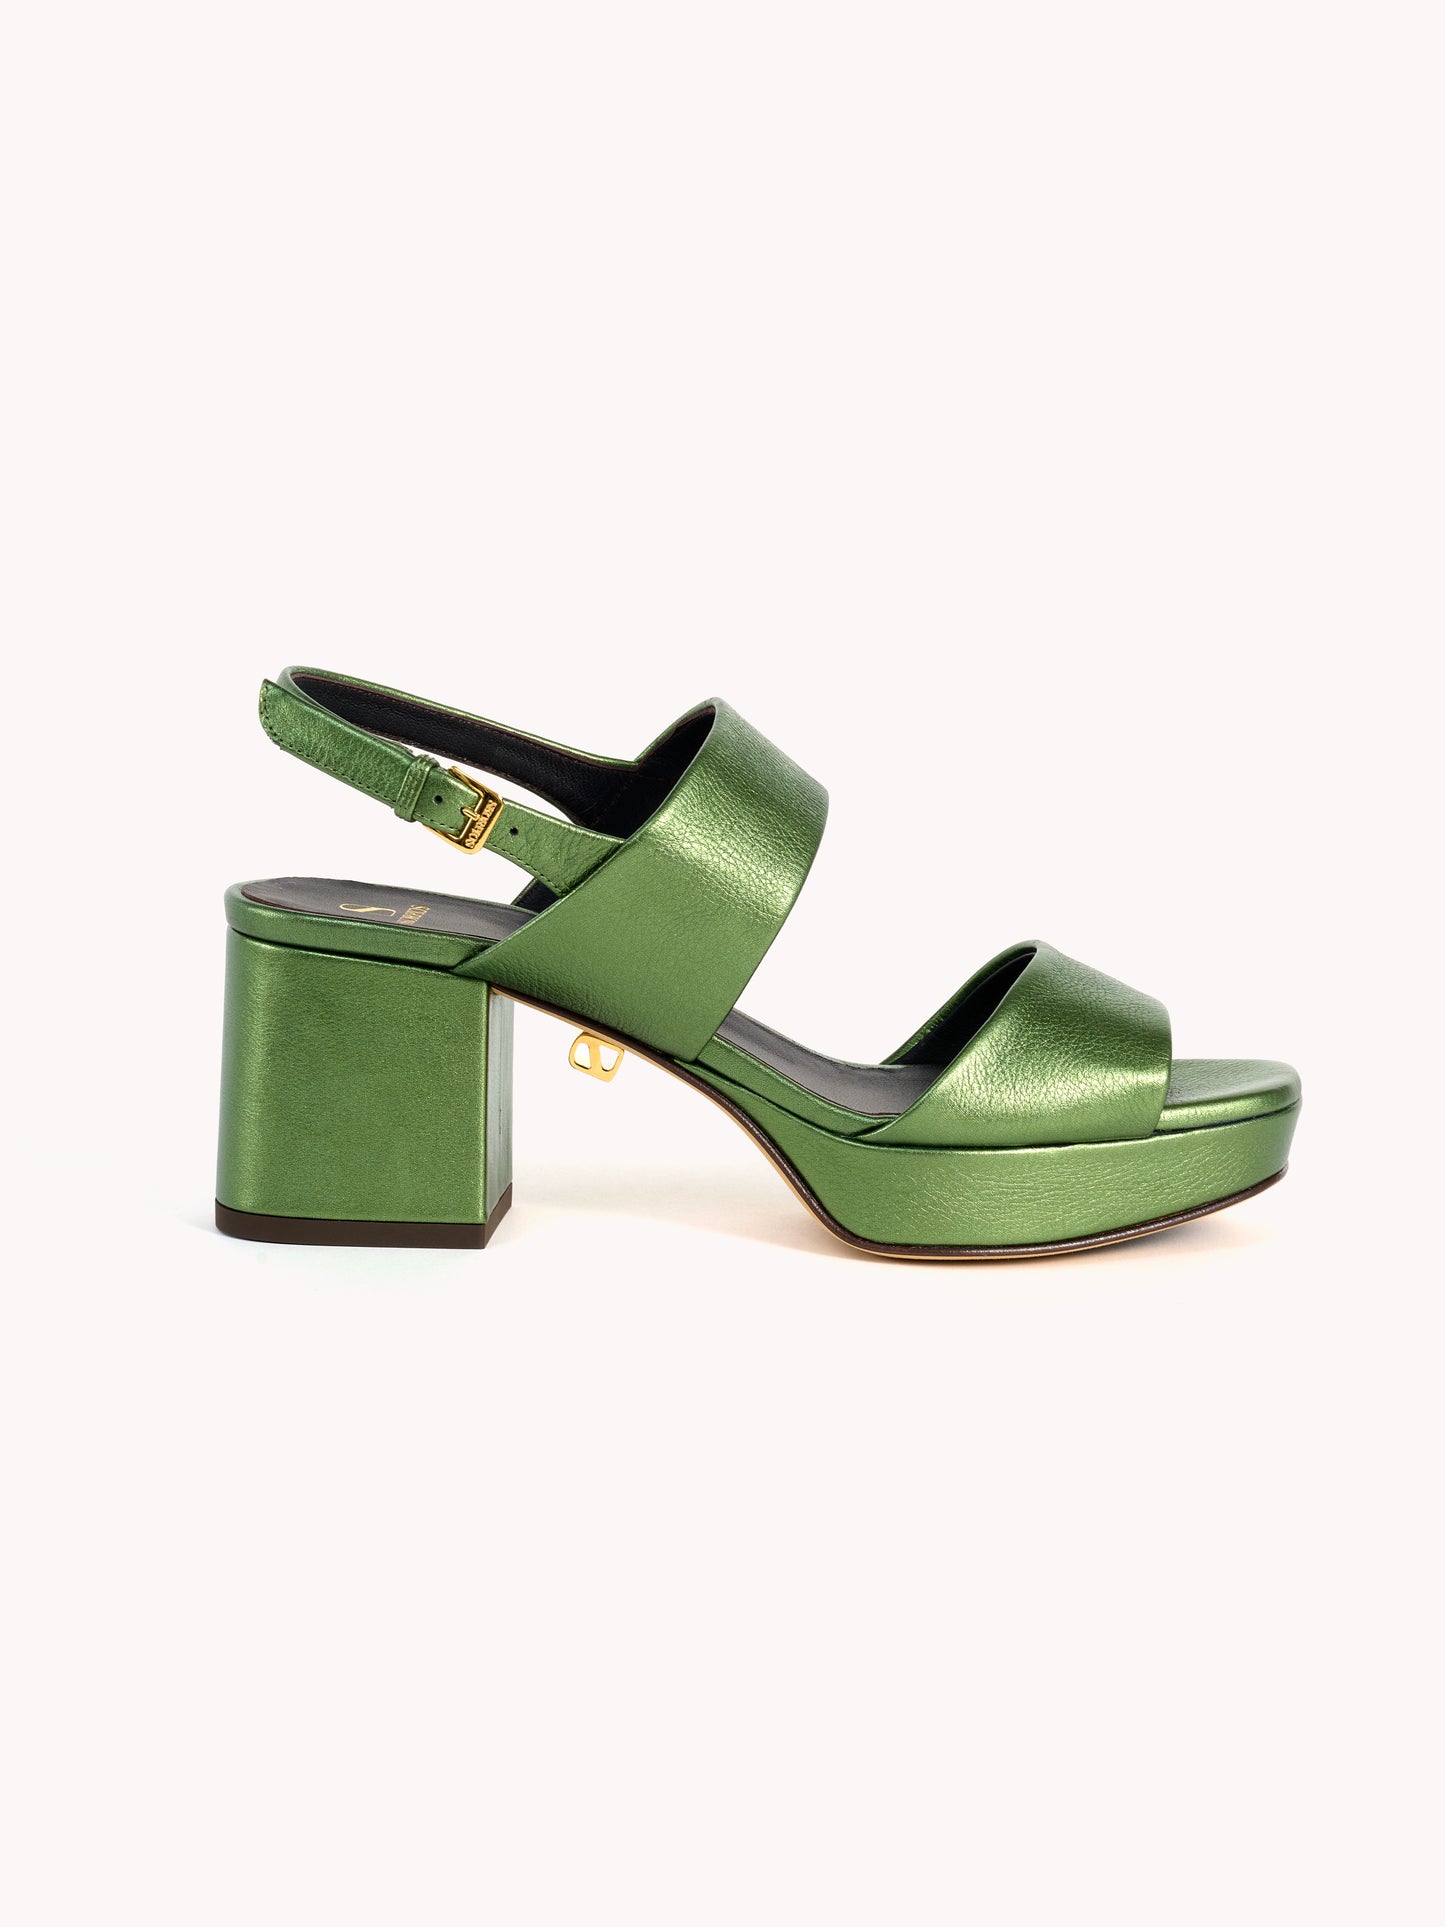 mid-heel metallic green sandals effortless chic women skorpios